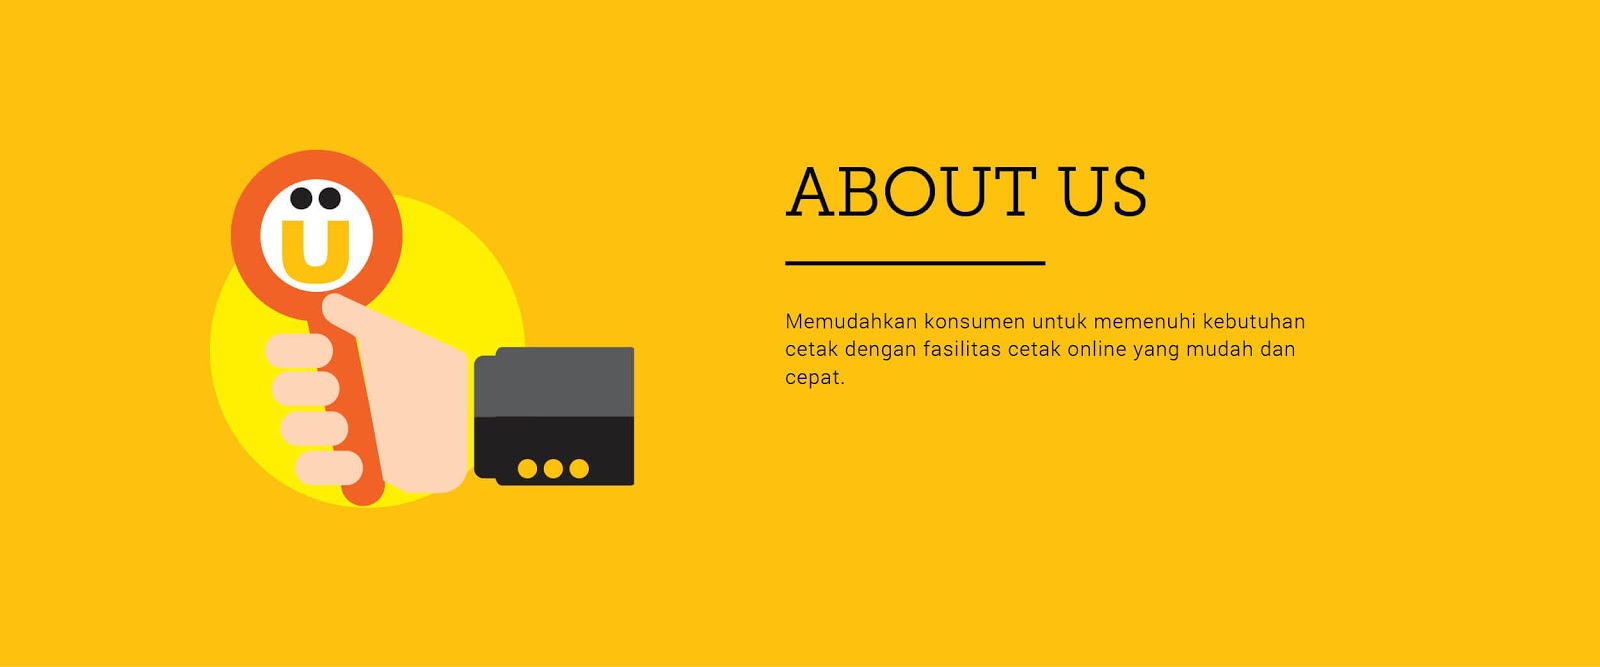  percetakan online murah terpercaya dan terbaik di indonesia Uprint.id: Percetakan Online Murah dan Terbaik Di Indonesia?